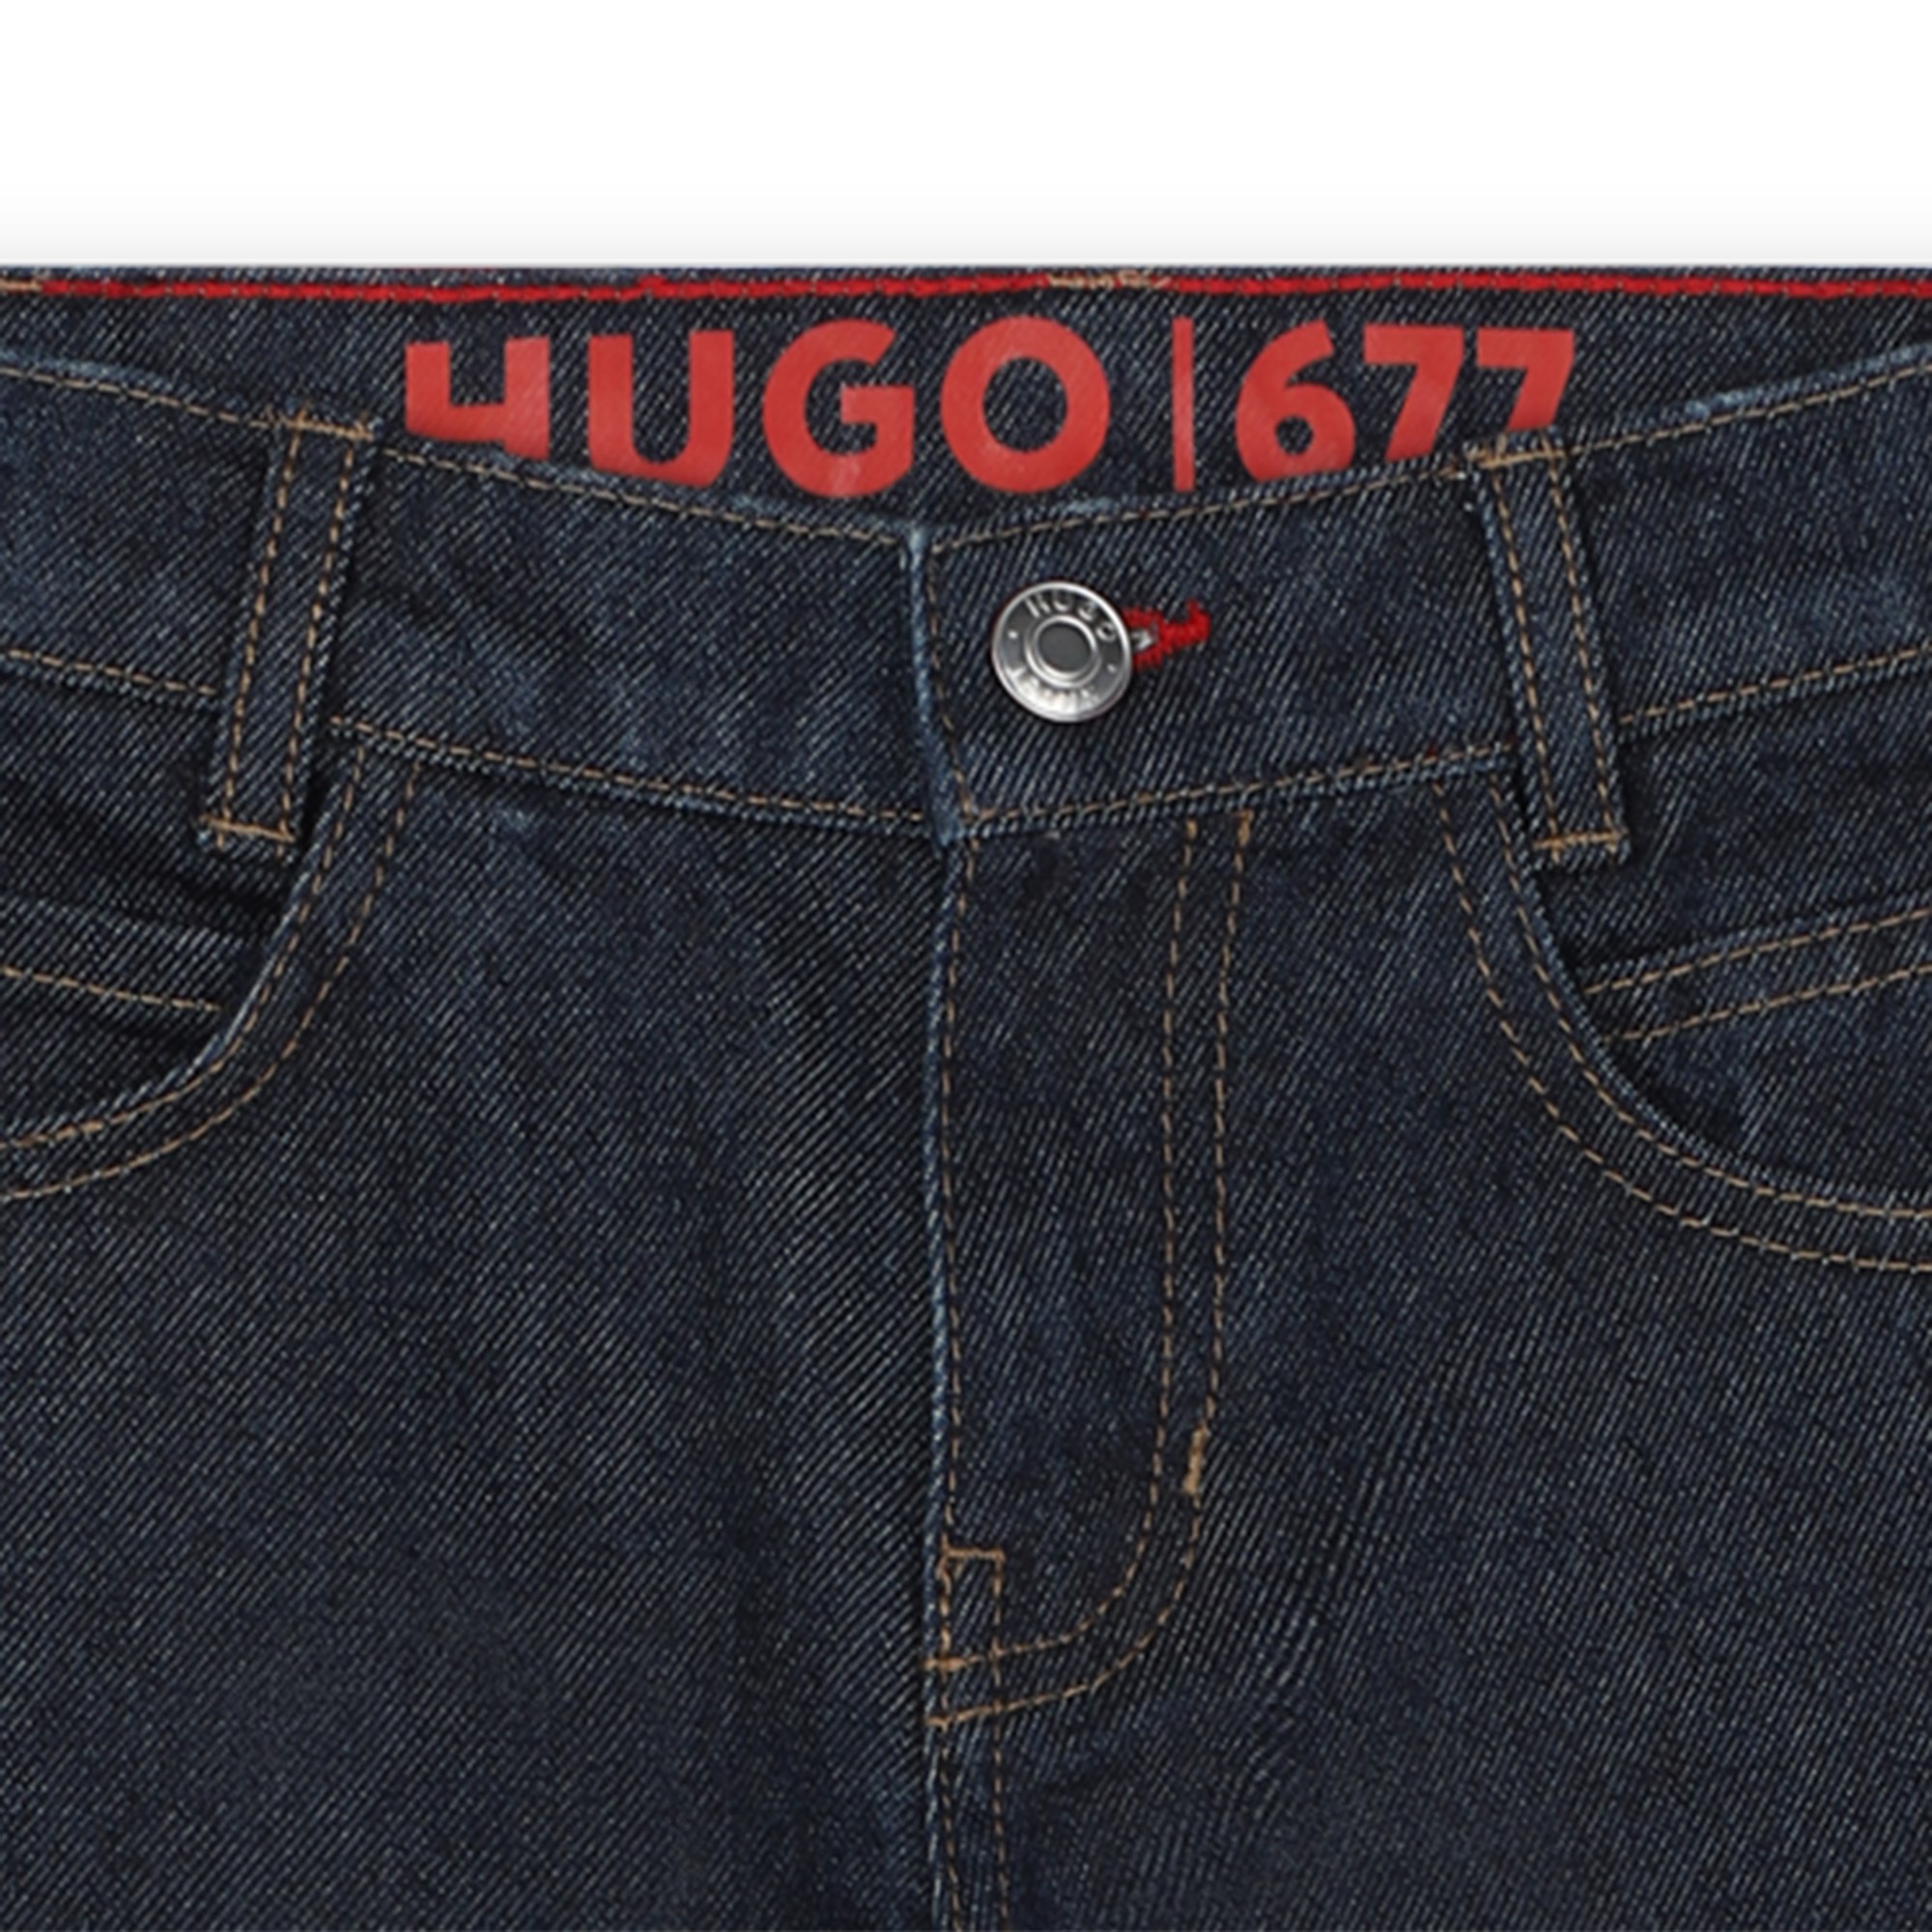 Jeans stampati 5 tasche HUGO Per RAGAZZO